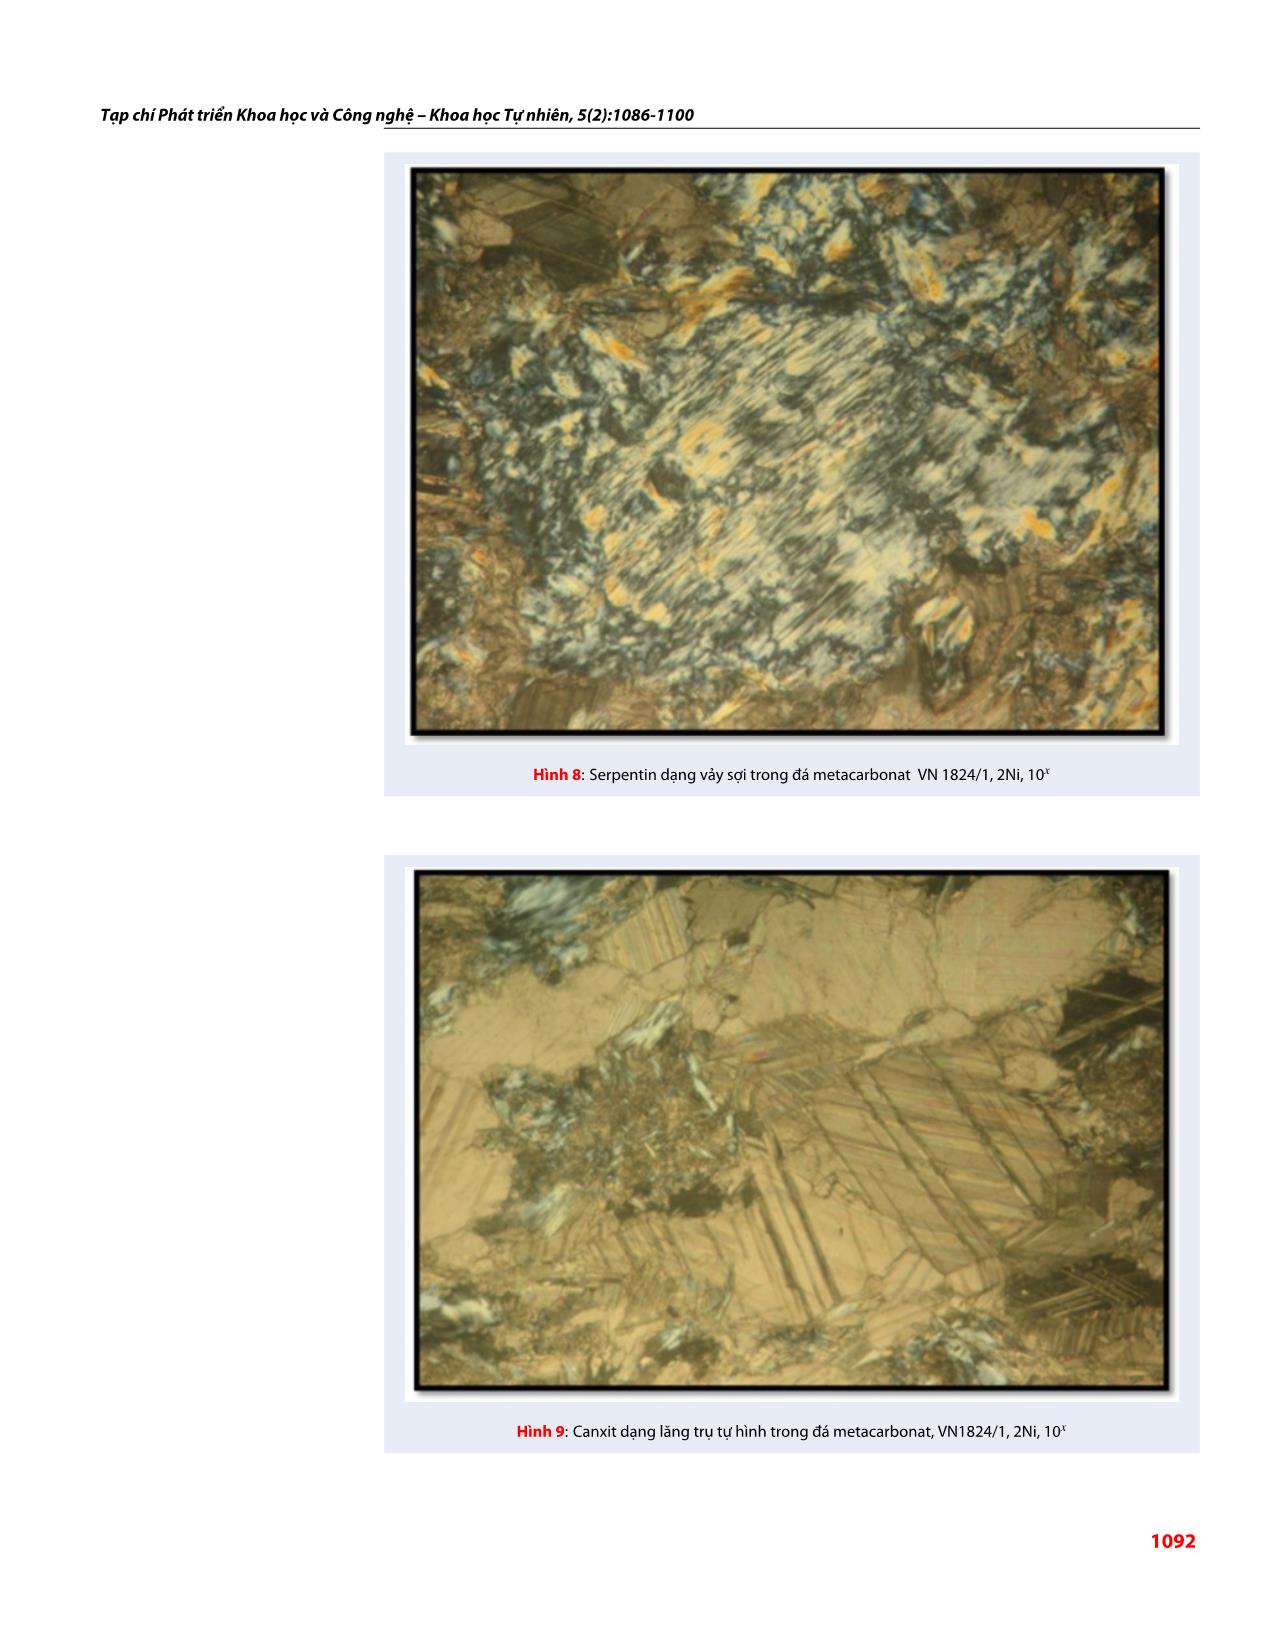 Đặc điểm thành phần khoáng vật trong đá metacarbonat khu vực Sa Thầy, Kon Tum và khả năng ứng dụng của metacarbonat trong đá mỹ nghệ trang 7